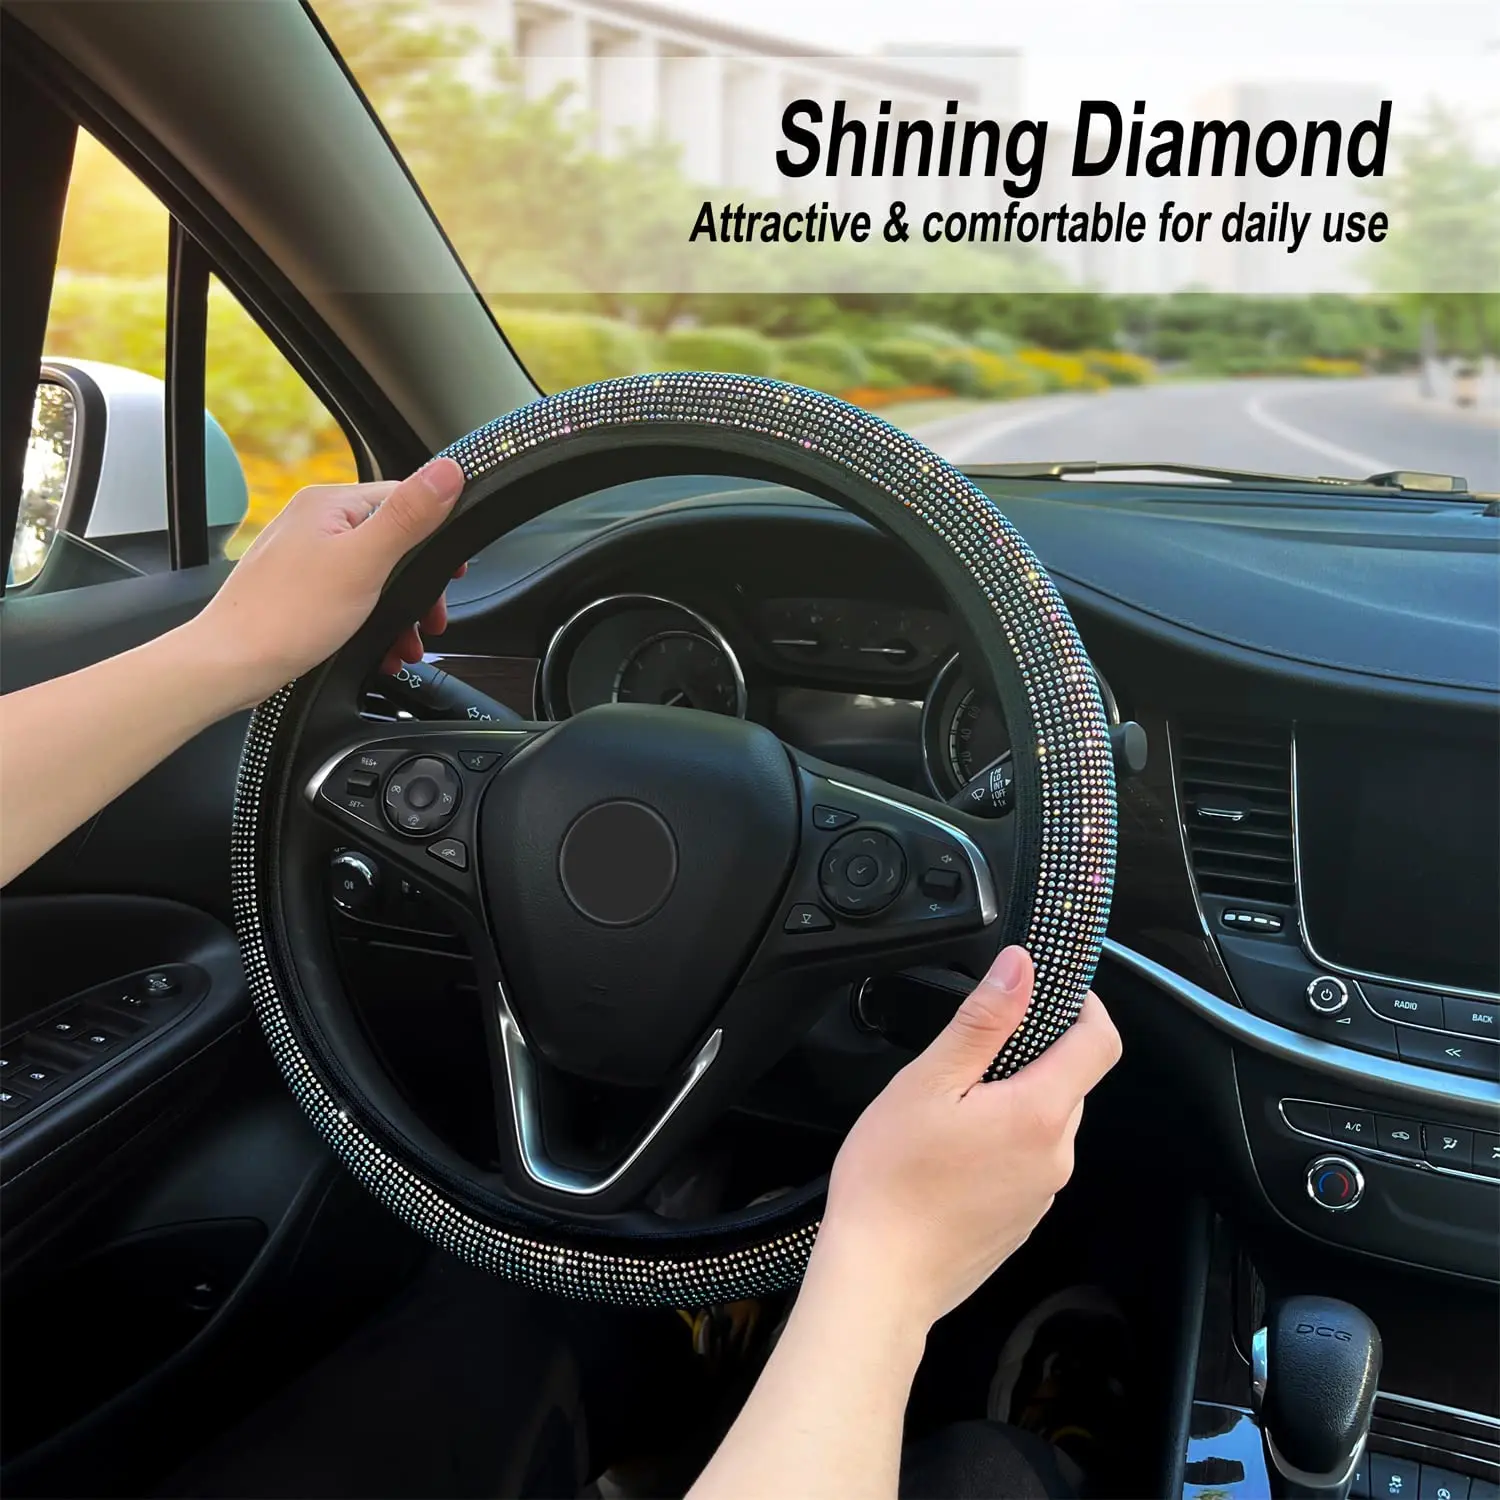 Rhinestone Steering Wheel Cover 15in/Universal Fit